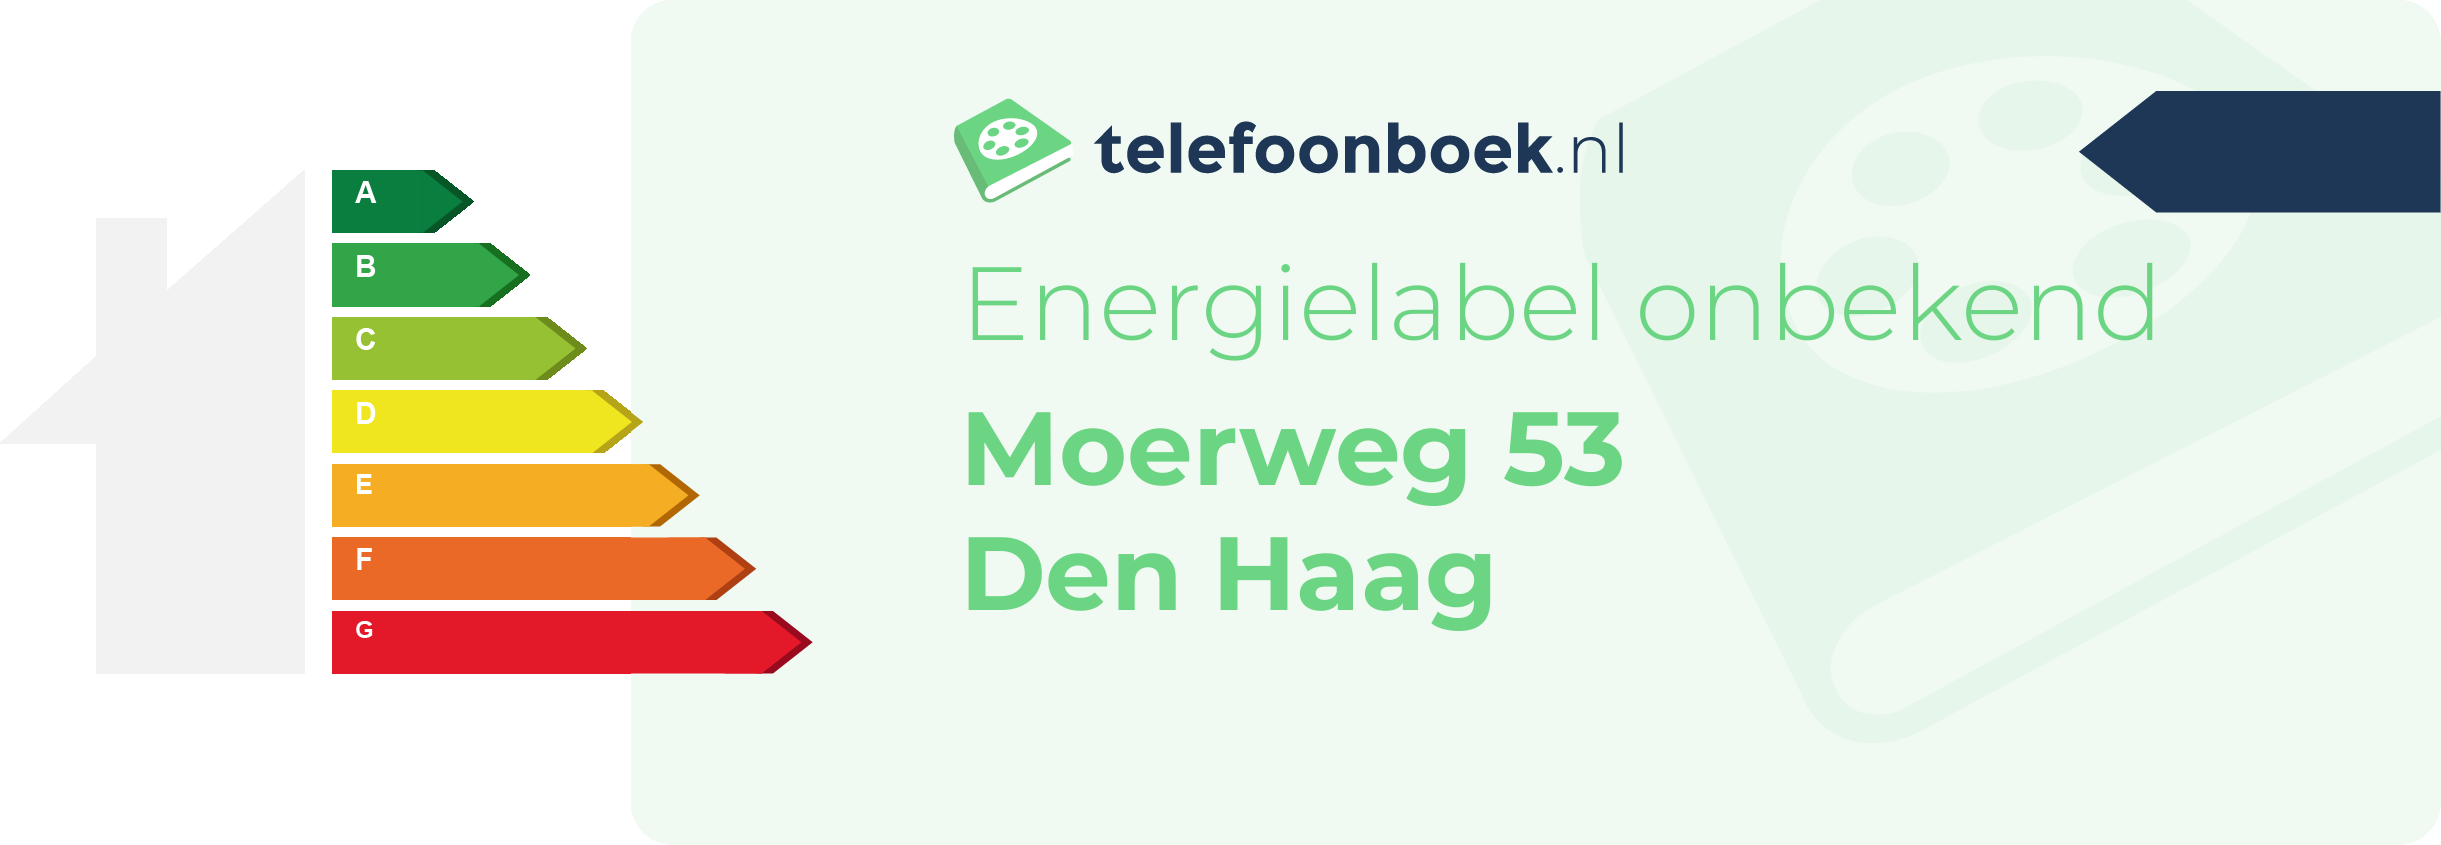 Energielabel Moerweg 53 Den Haag